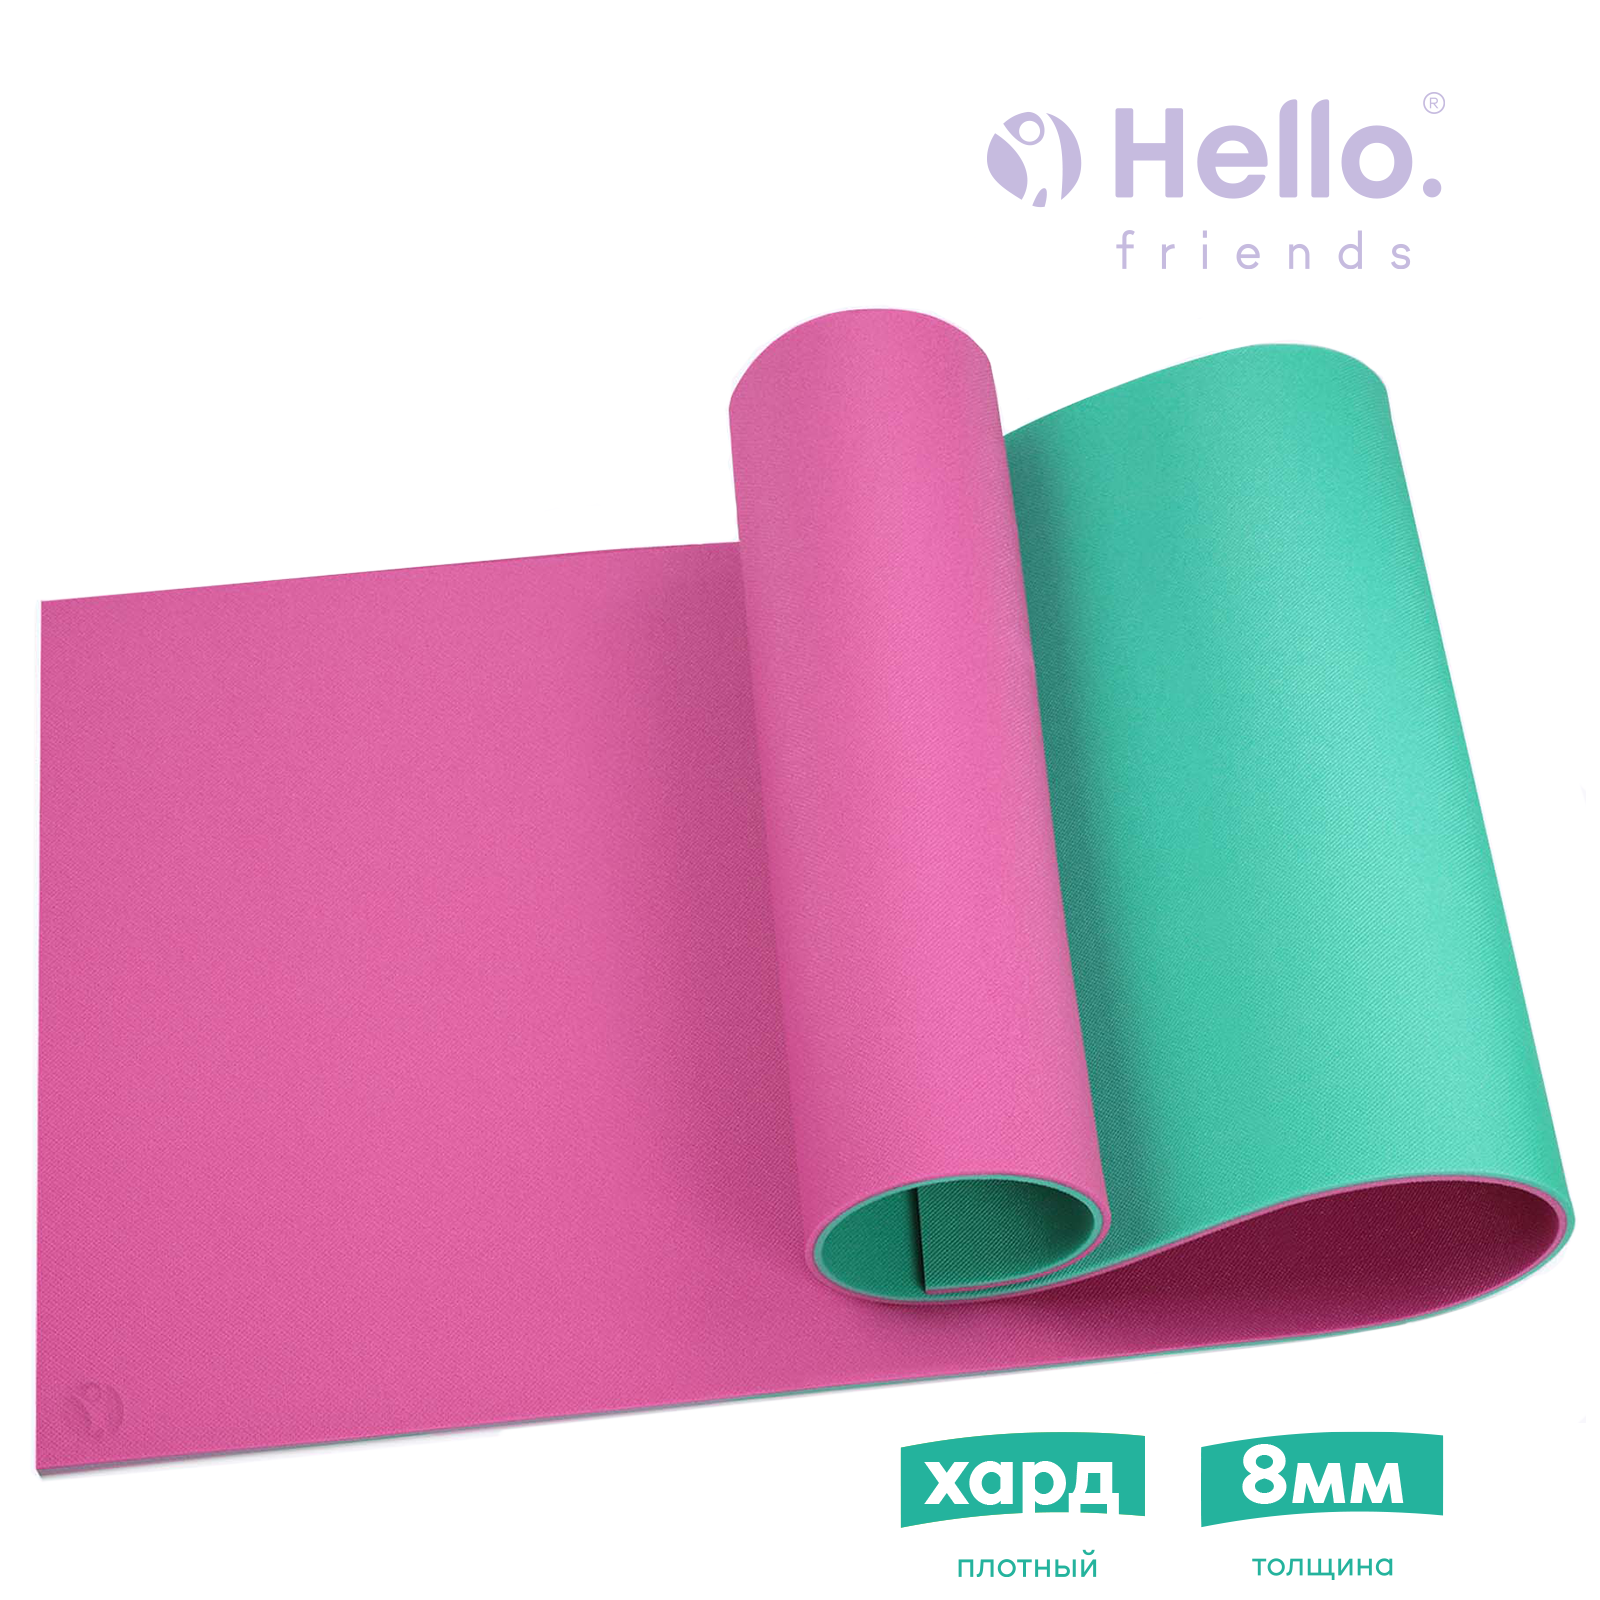 Коврик для фитнеса и йоги HelloFriends Hard 8мм 180x60см, розовый, плотный, нескользящий